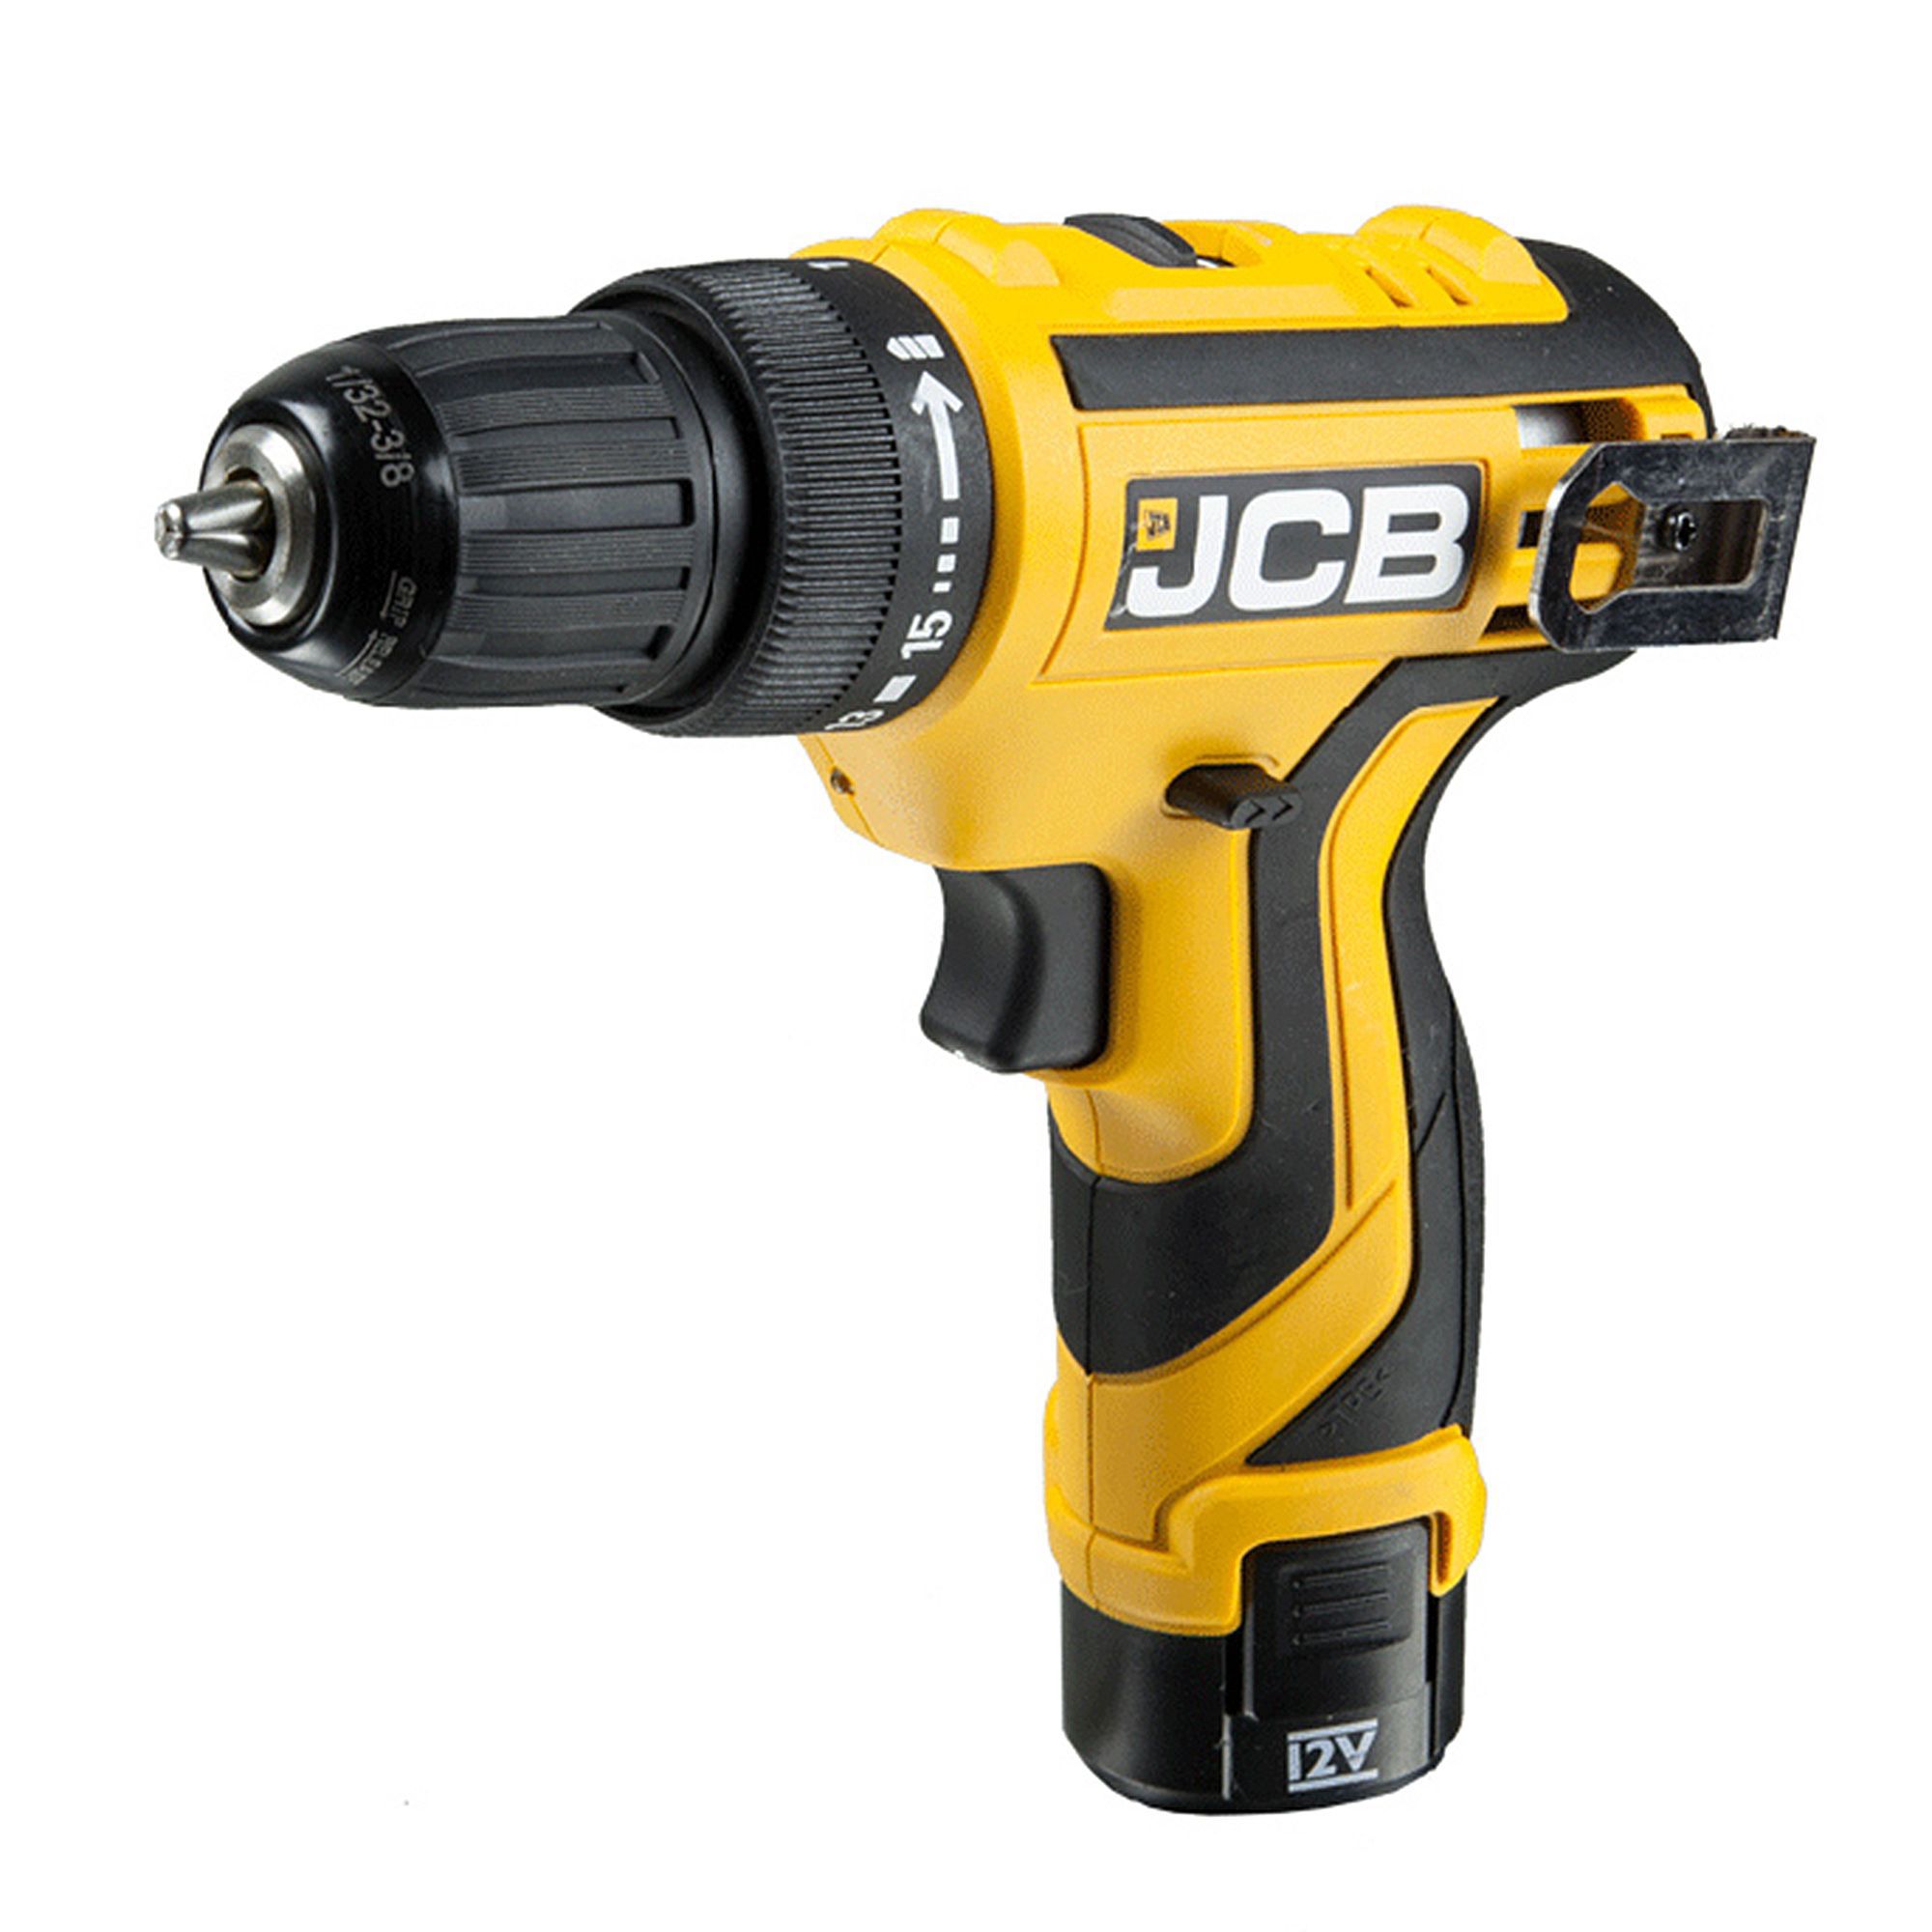 jcb cordless drill